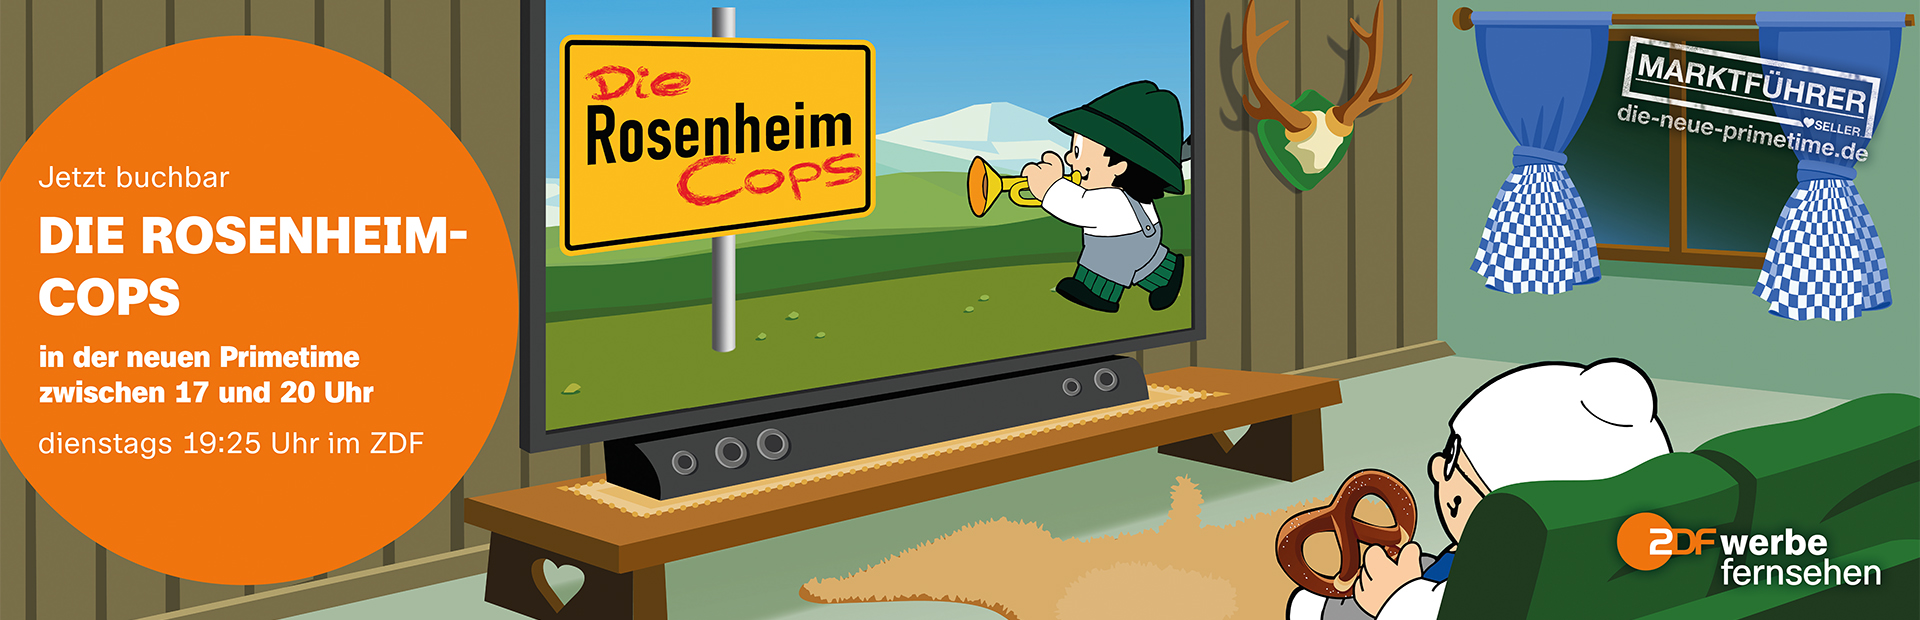 Die neue Primetime | Die Rosenheim-Cops (© ZDF Werbefernsehen GmbH)